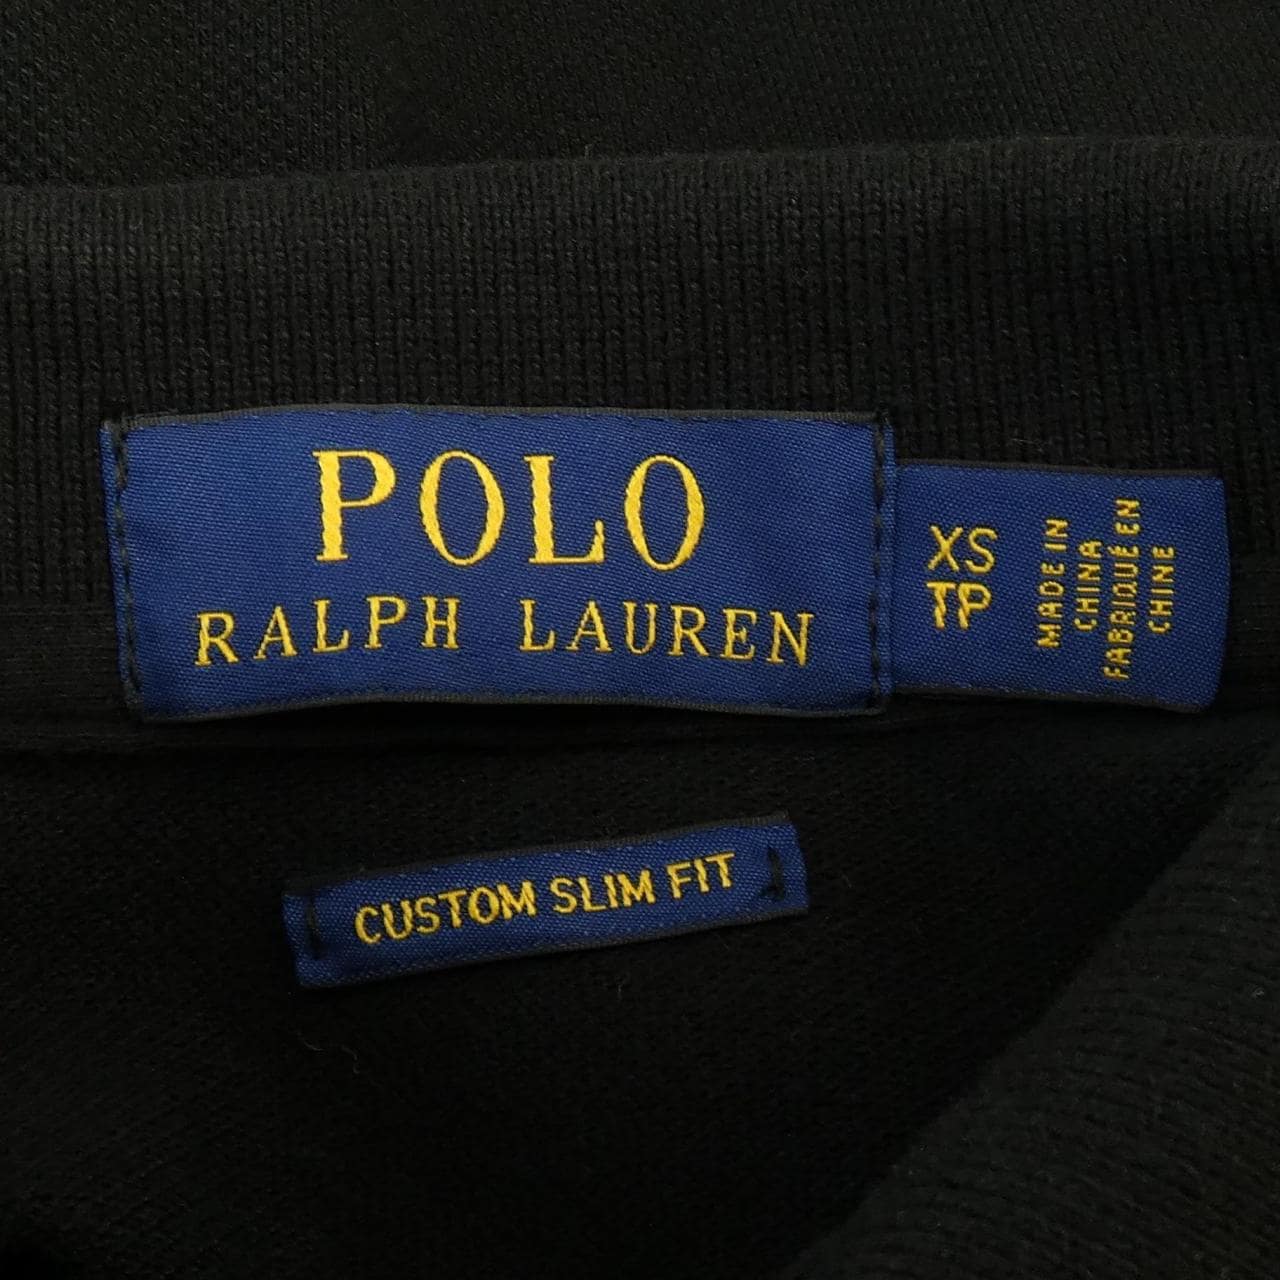 Ralph LaLPH LAUREN Polo衫